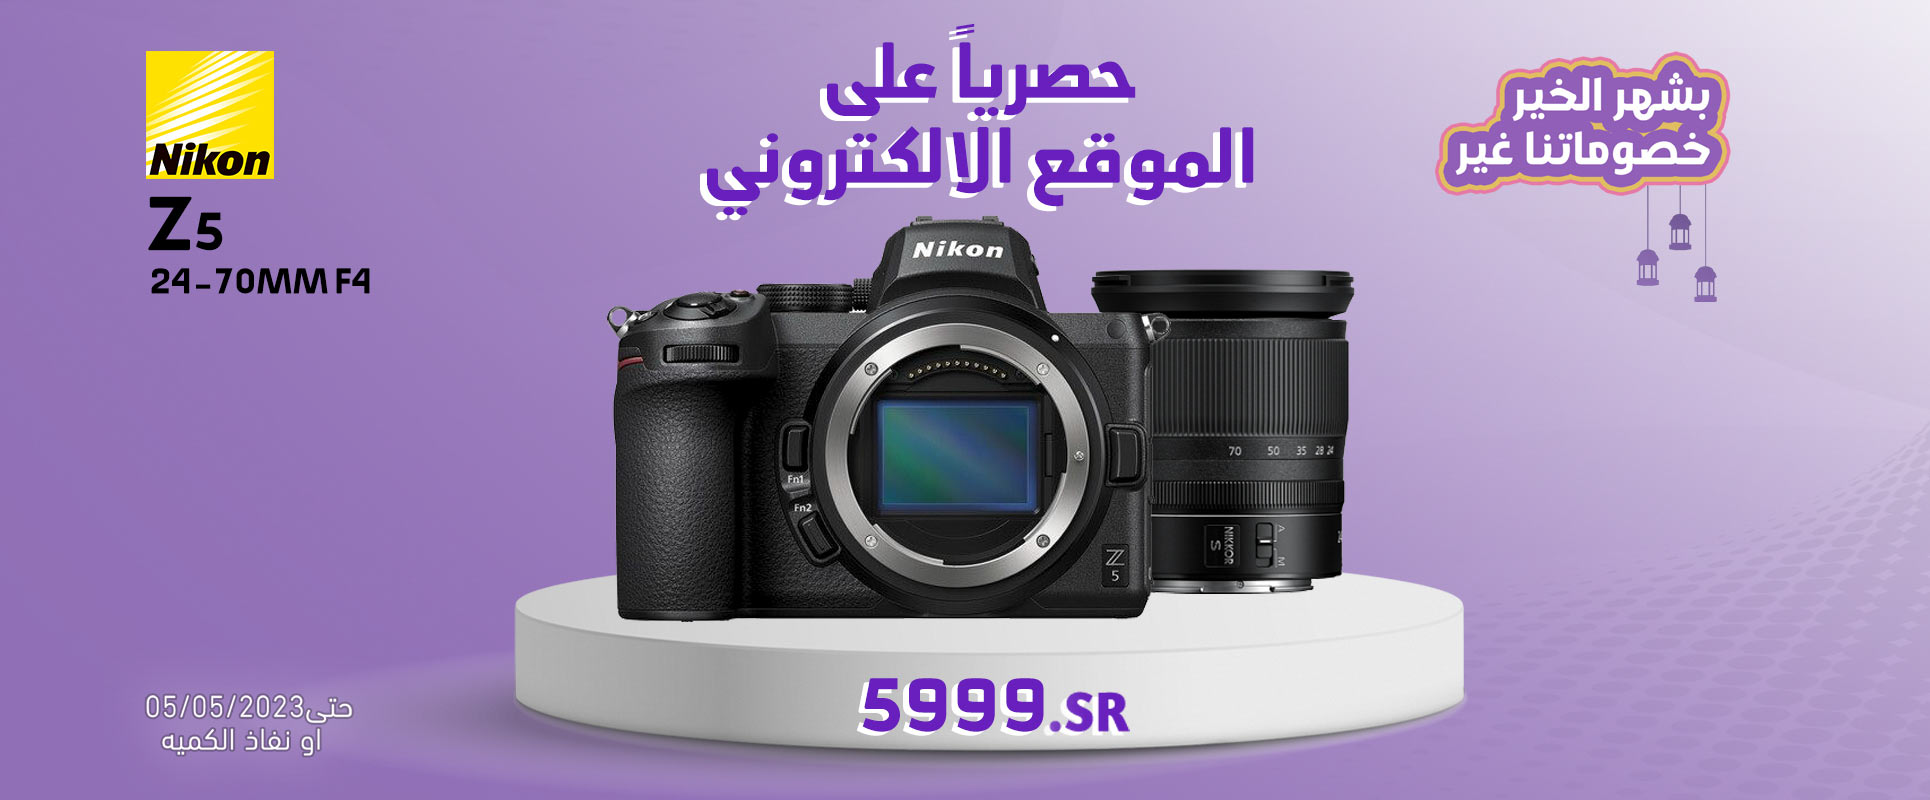 Nikon z5 offer